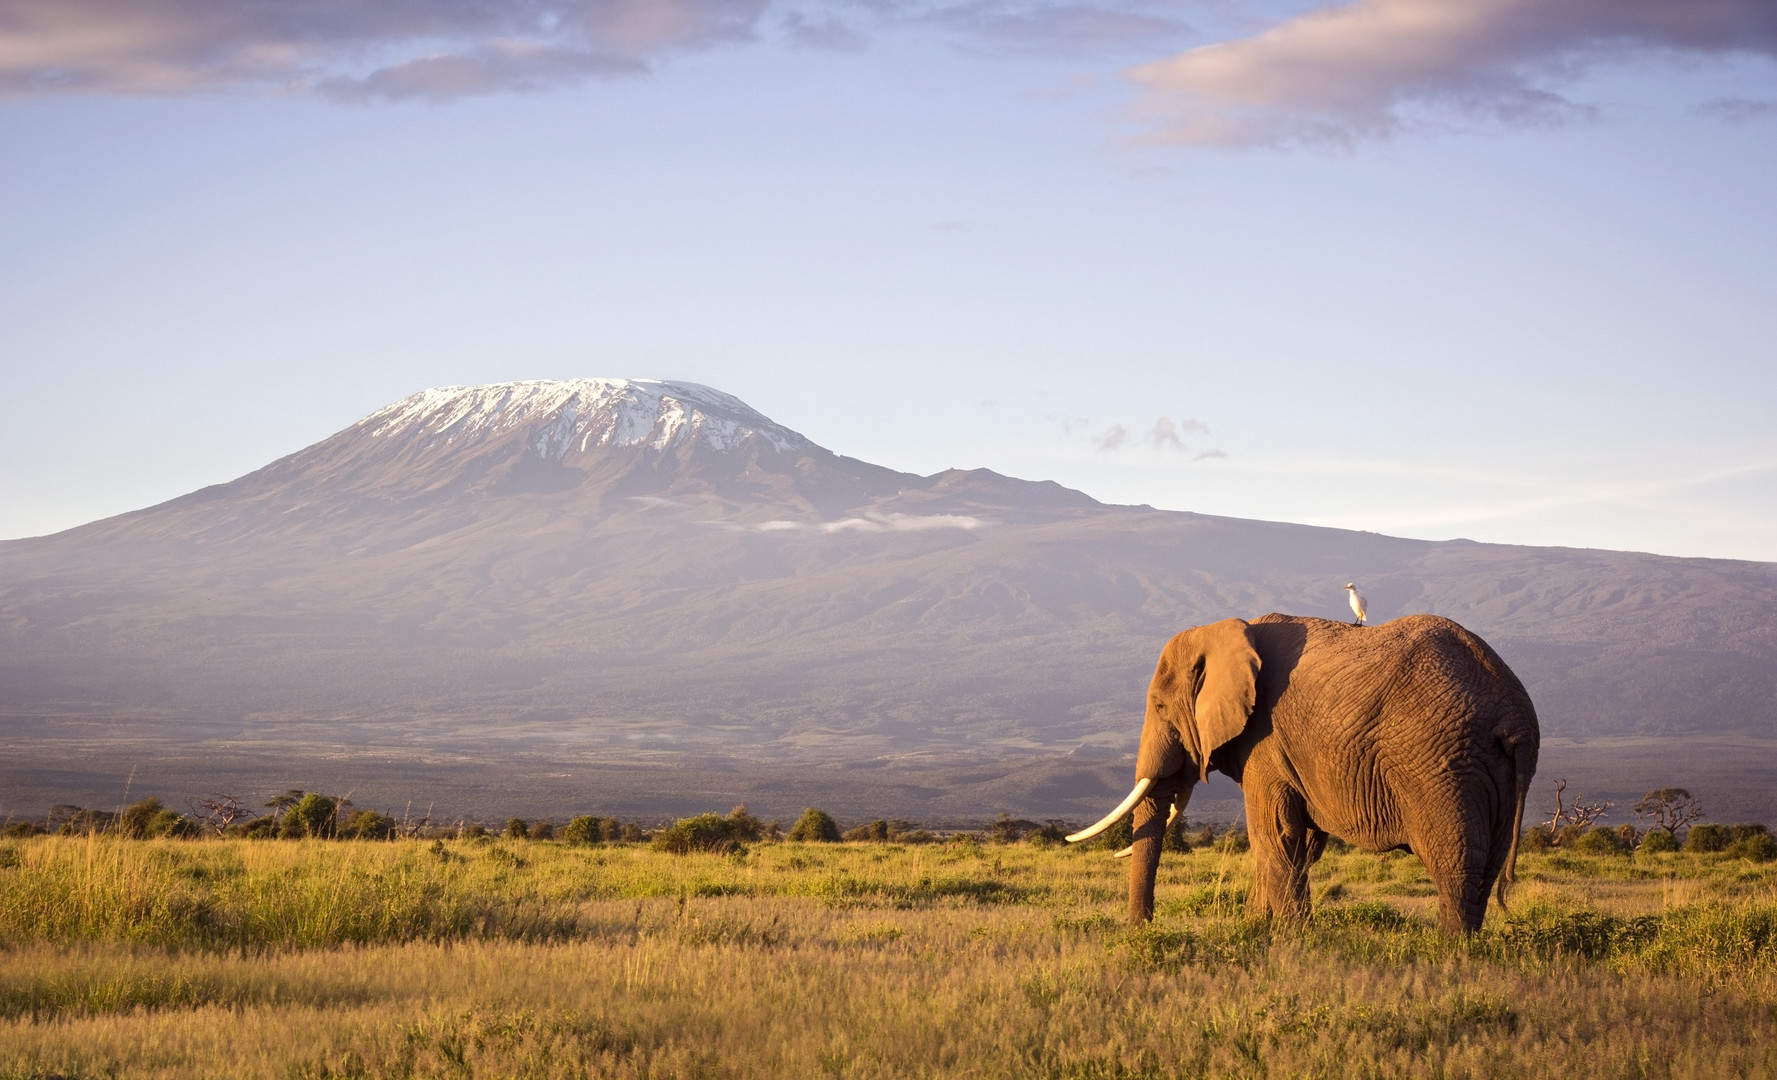 Safari ve stínu Kilimandžára